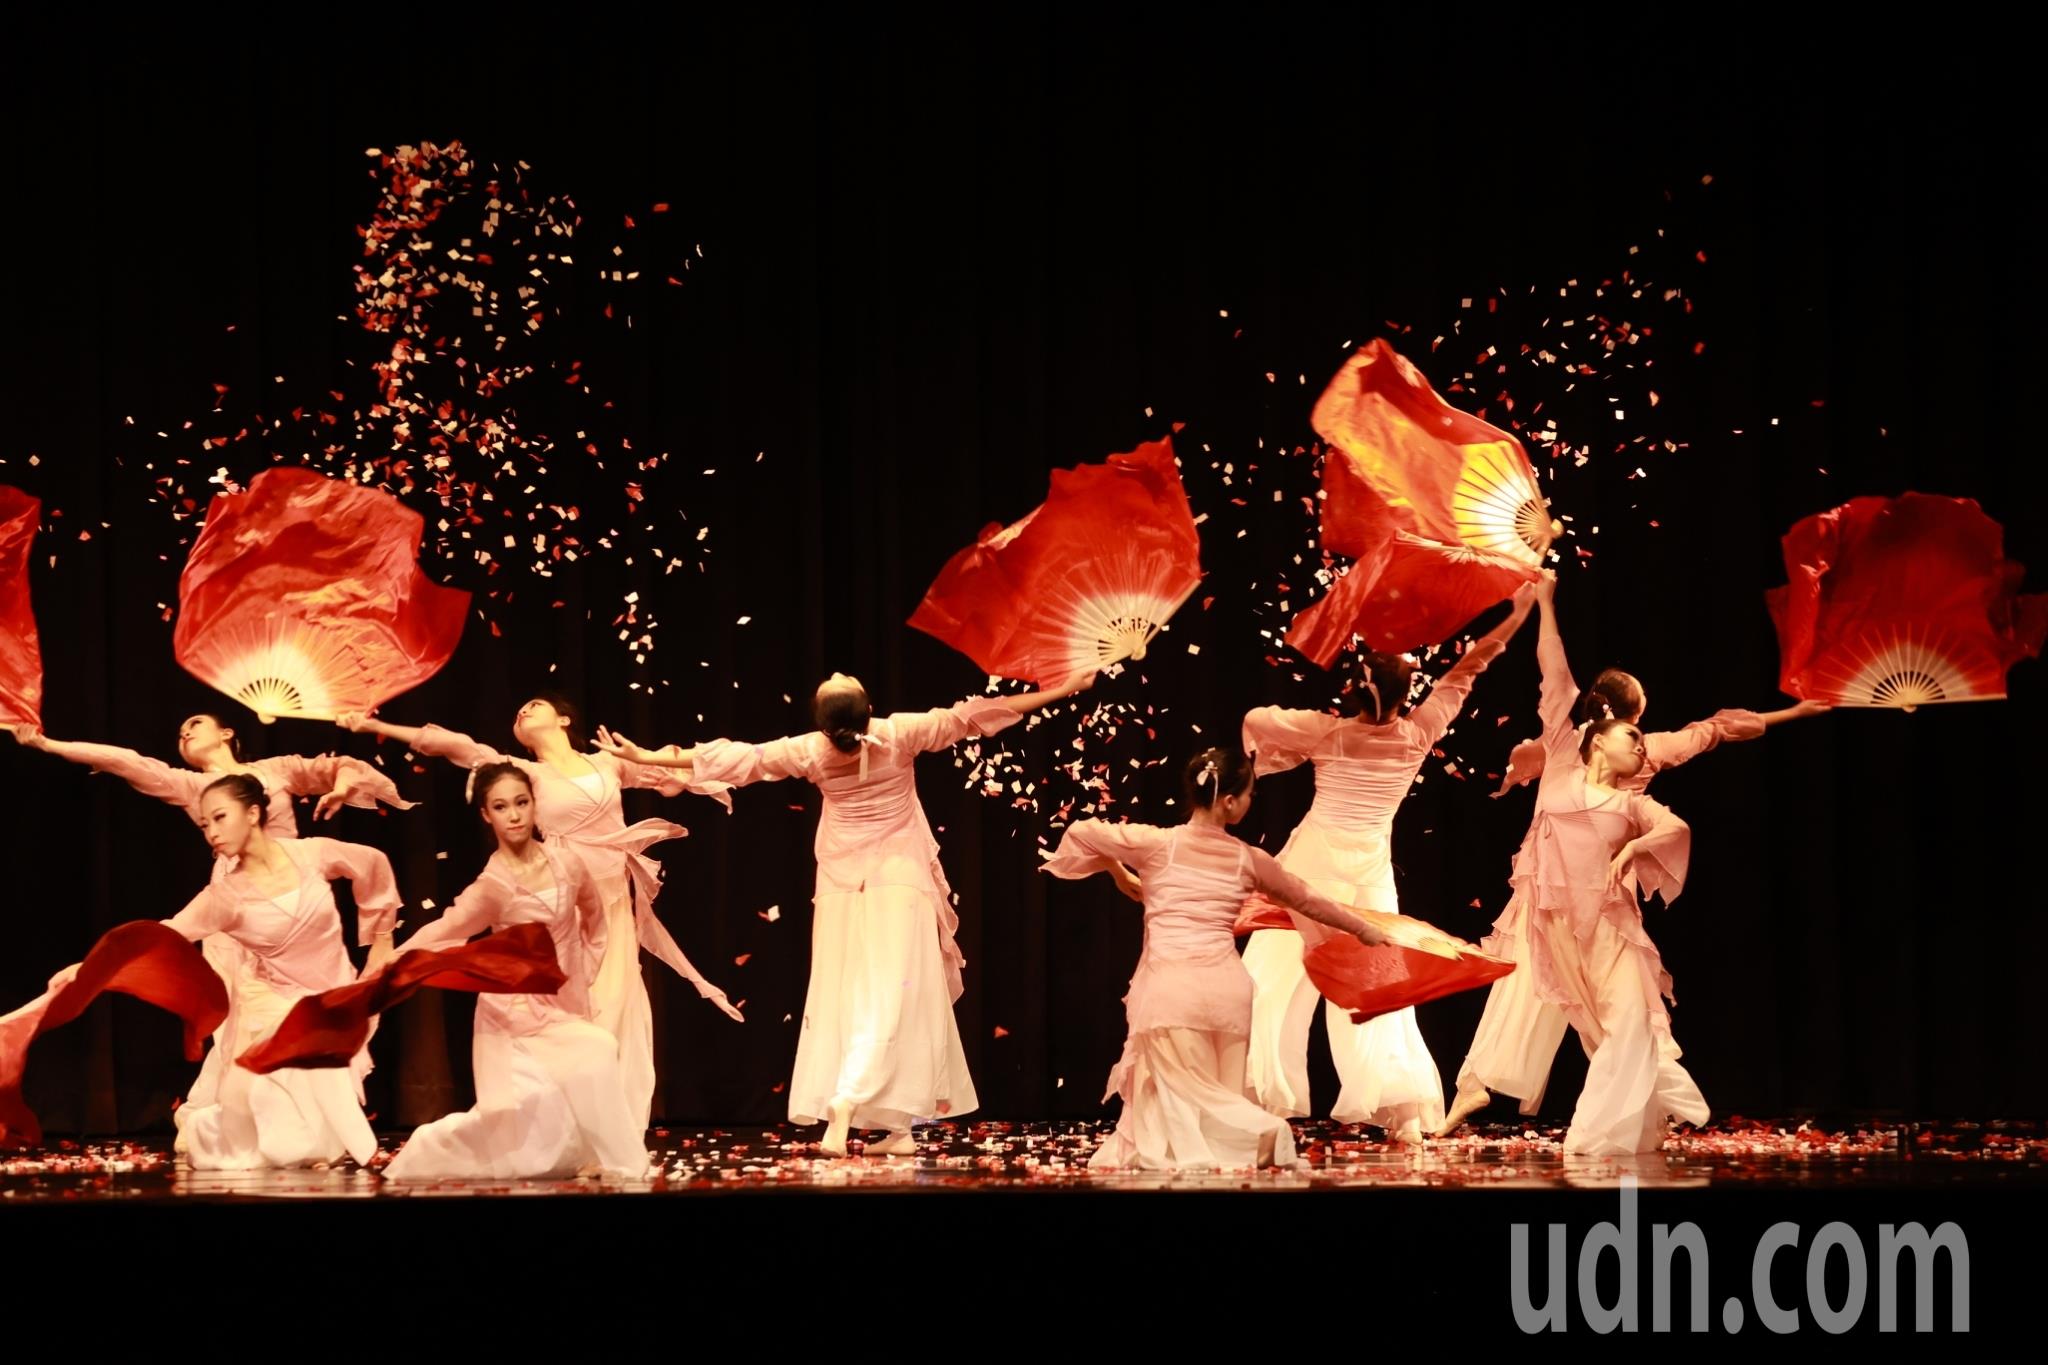 台南市家齐高中舞蹈班学生实习创作舞展5月4日登场，今天先在校内演出，展现学生的创意与突破。记者郑惠仁／摄影